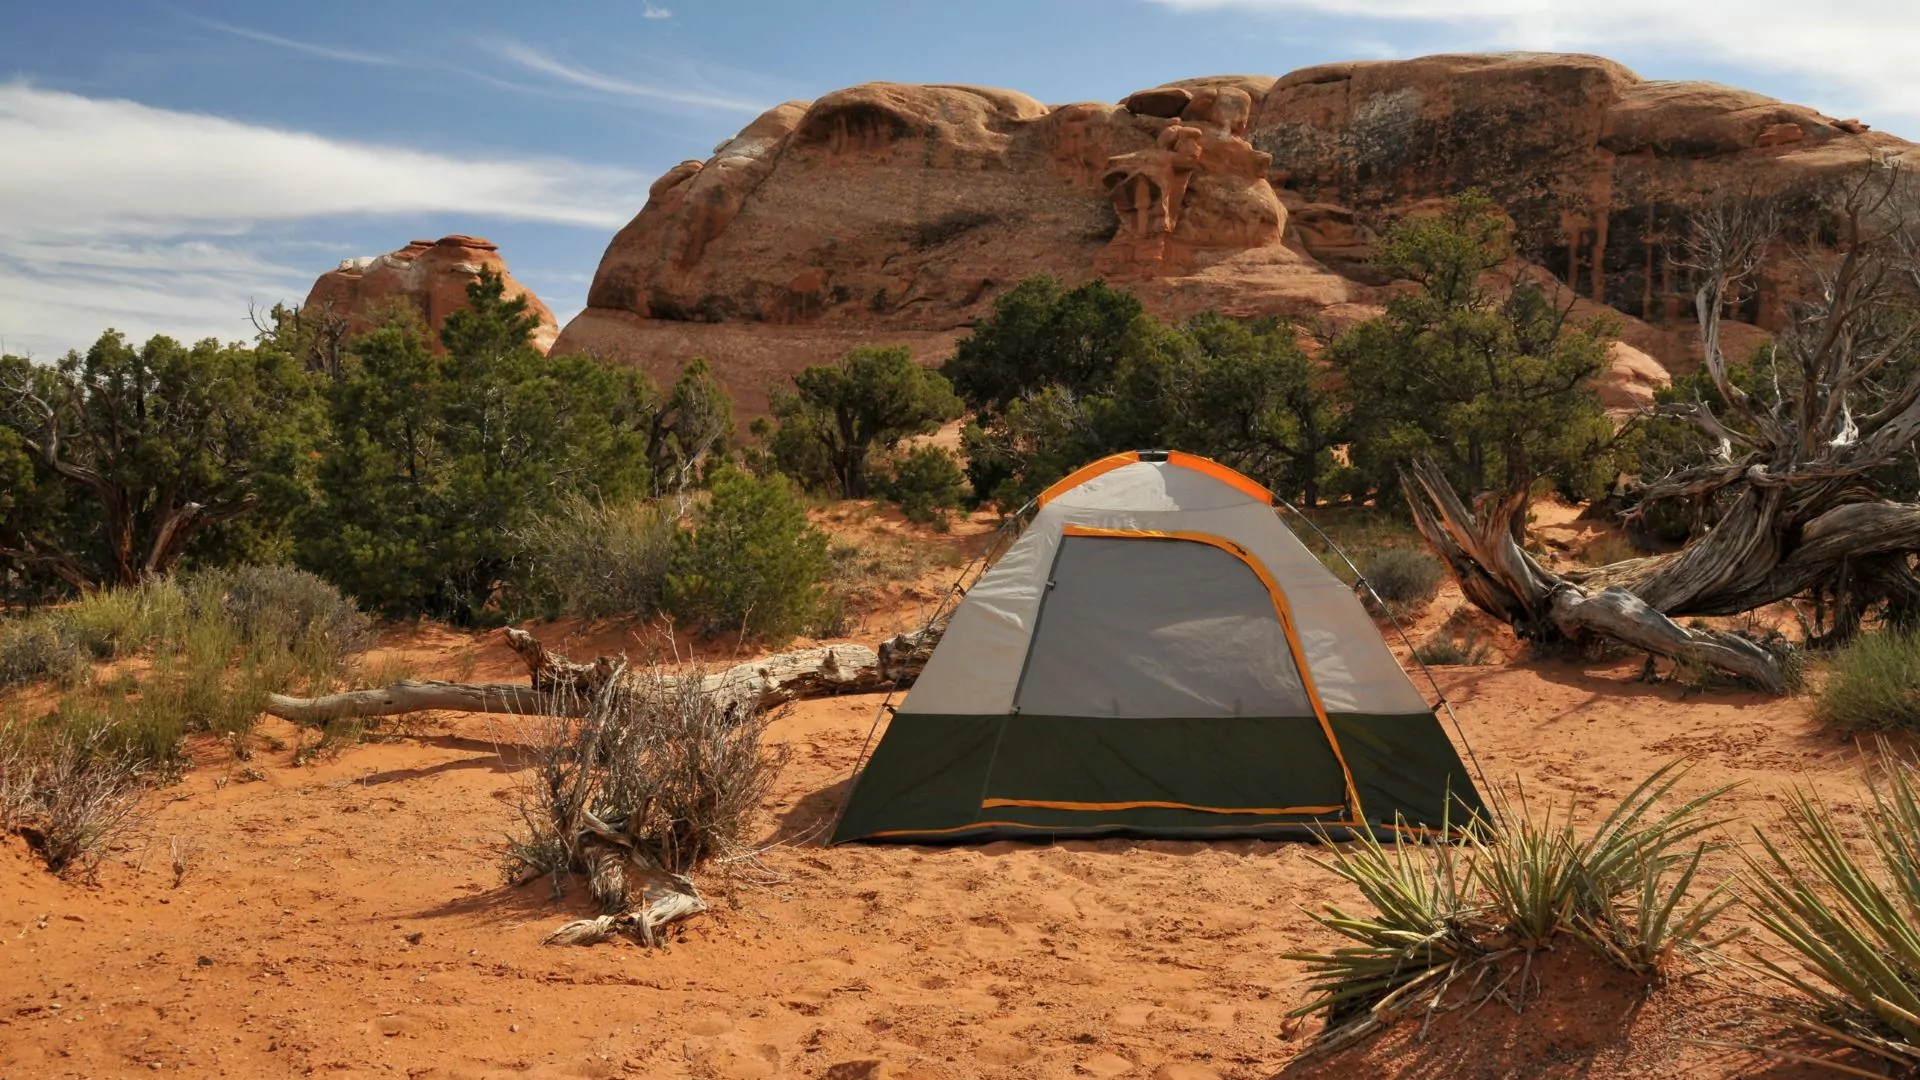 Camping at Arches National Park near Moab Utah